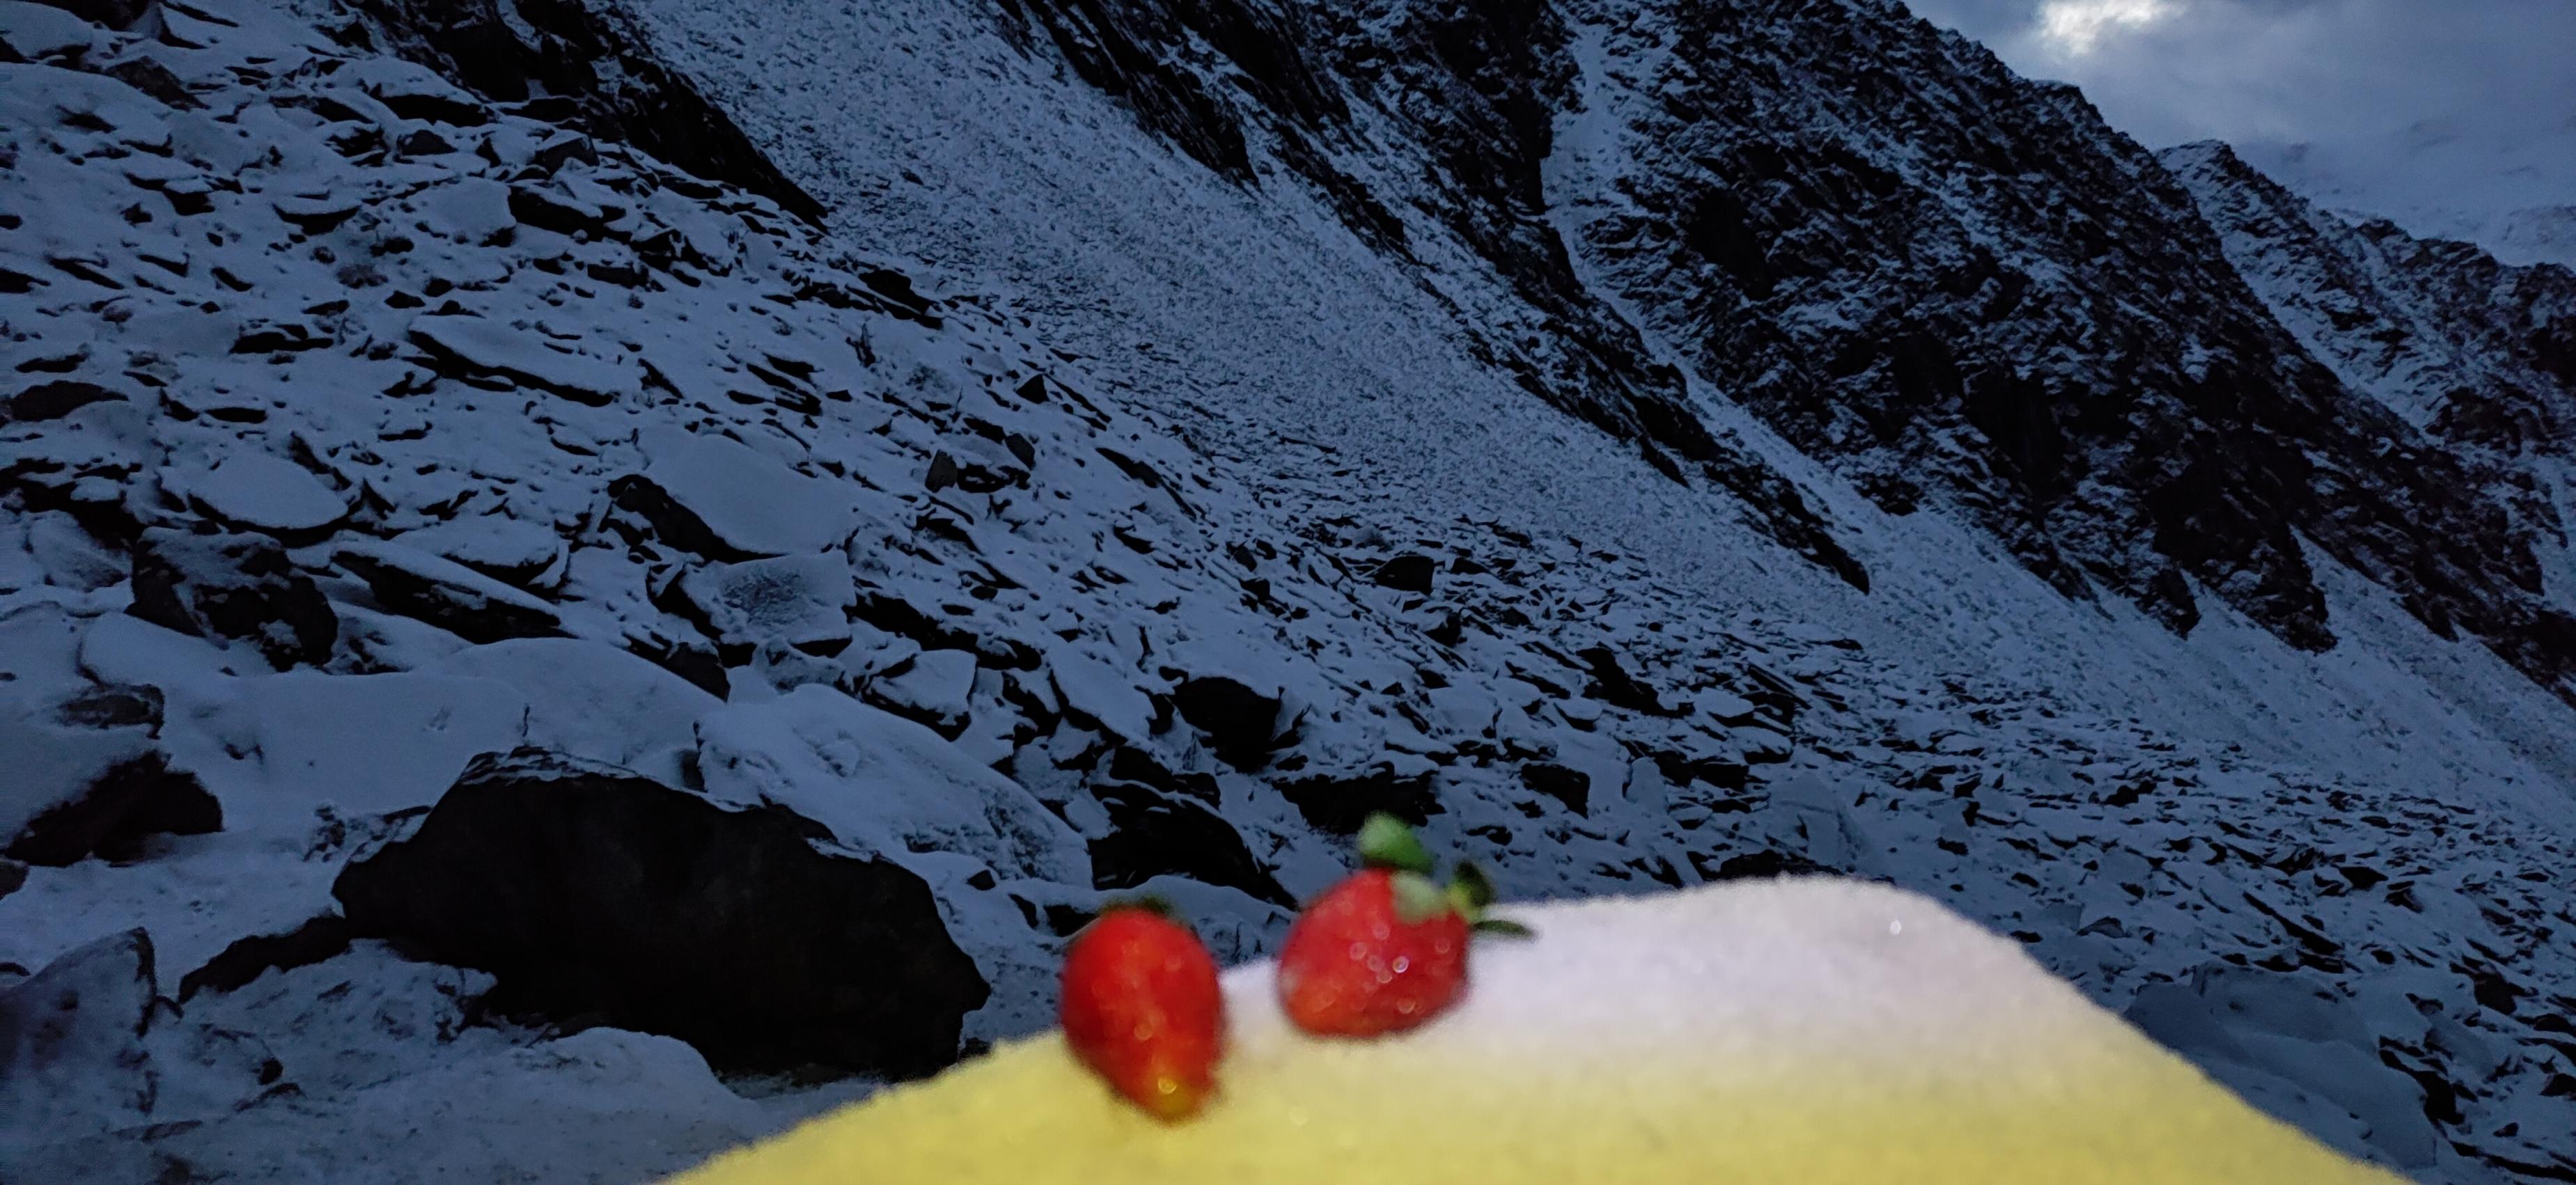 【蔚蓝】带着草莓爬雪山-第6张